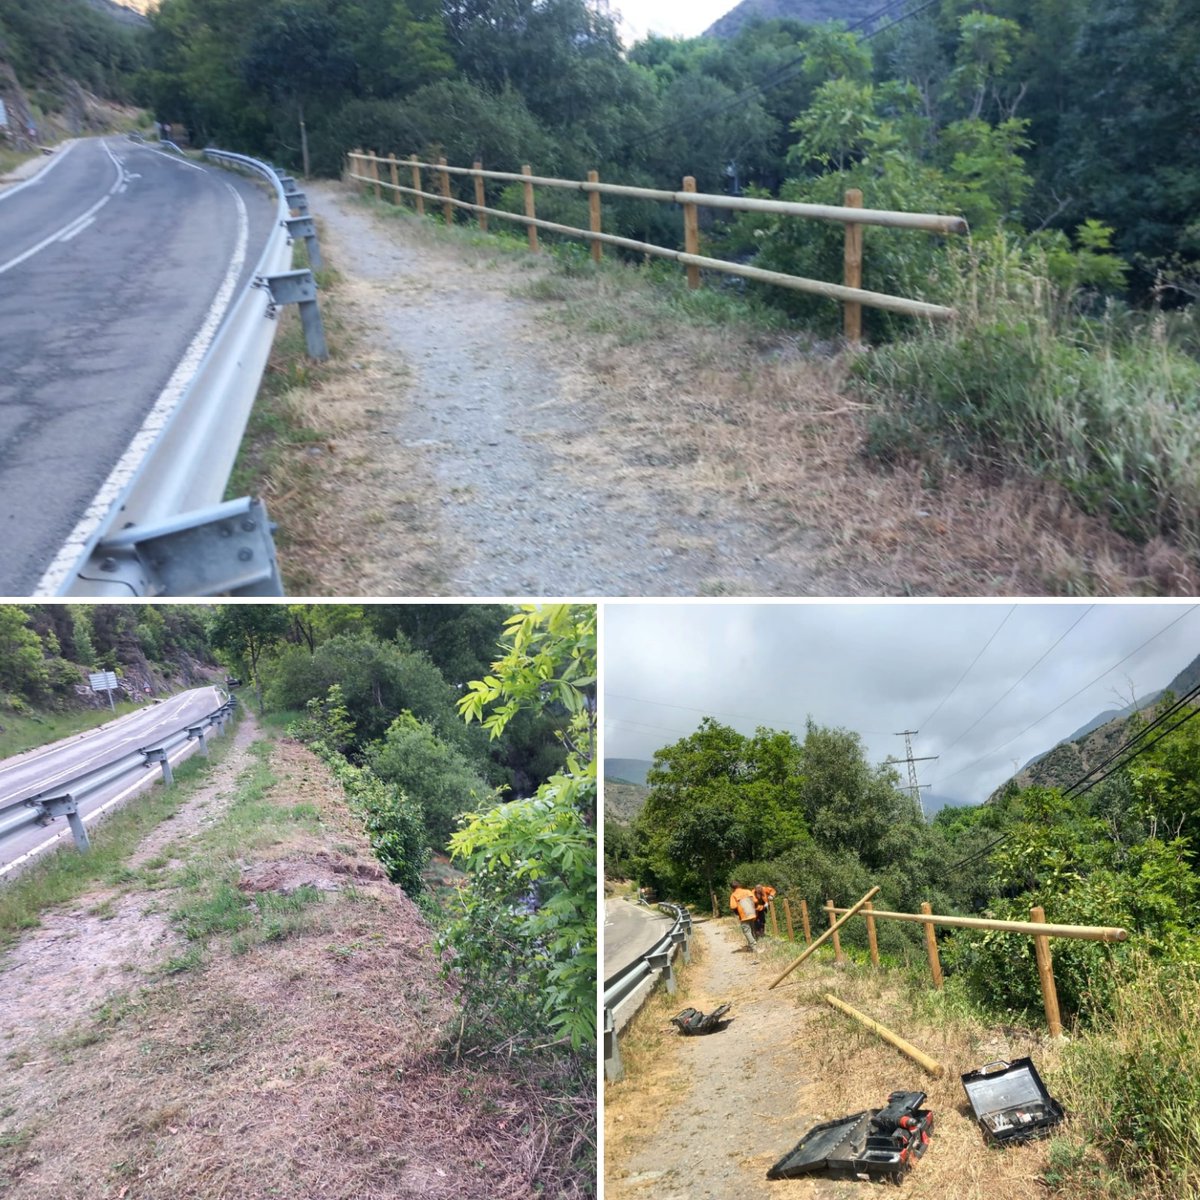 Amb el Servei de Manteniment del #PNAltPirineu instal·lem una barana de seguretat dels senderistes al pas exposat del camí senyalitzat d'Ainet de Cardós a Benante, proper al pont d'Arrós.
#ForestalCatalana
#ValldeCardós #senderisme